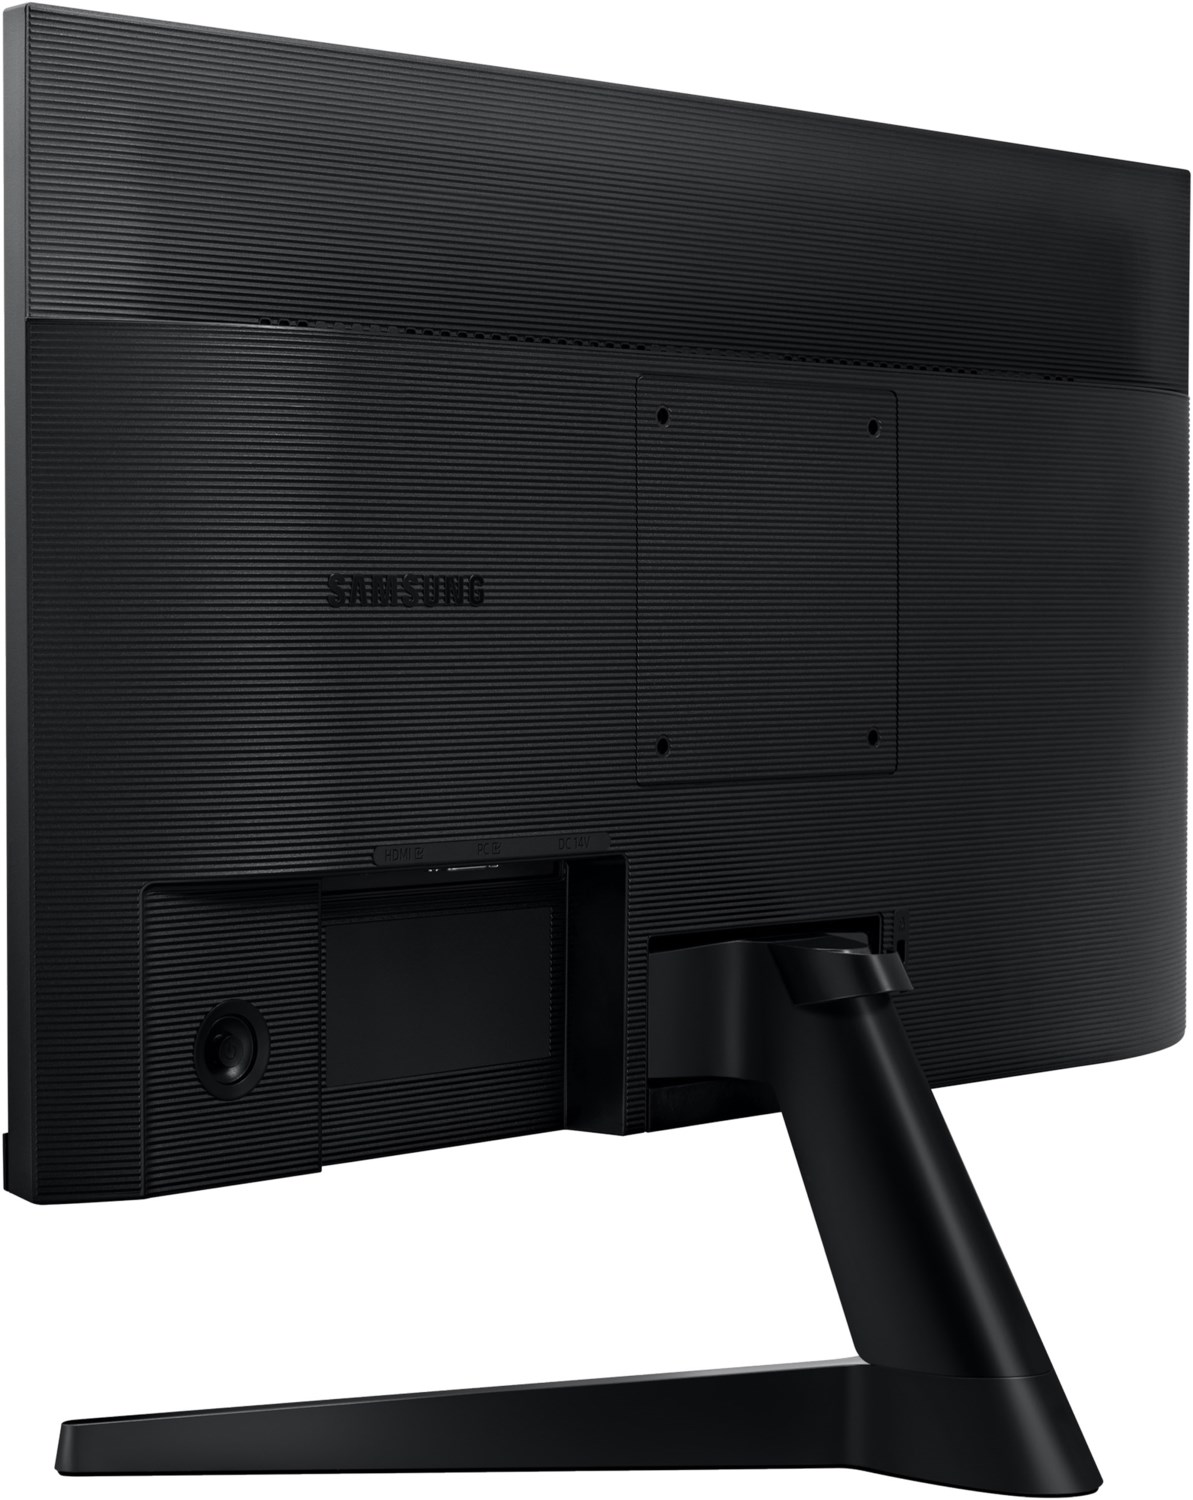 Samsung Essential 61 cm (24 Zoll) LED-Monitor schwarz